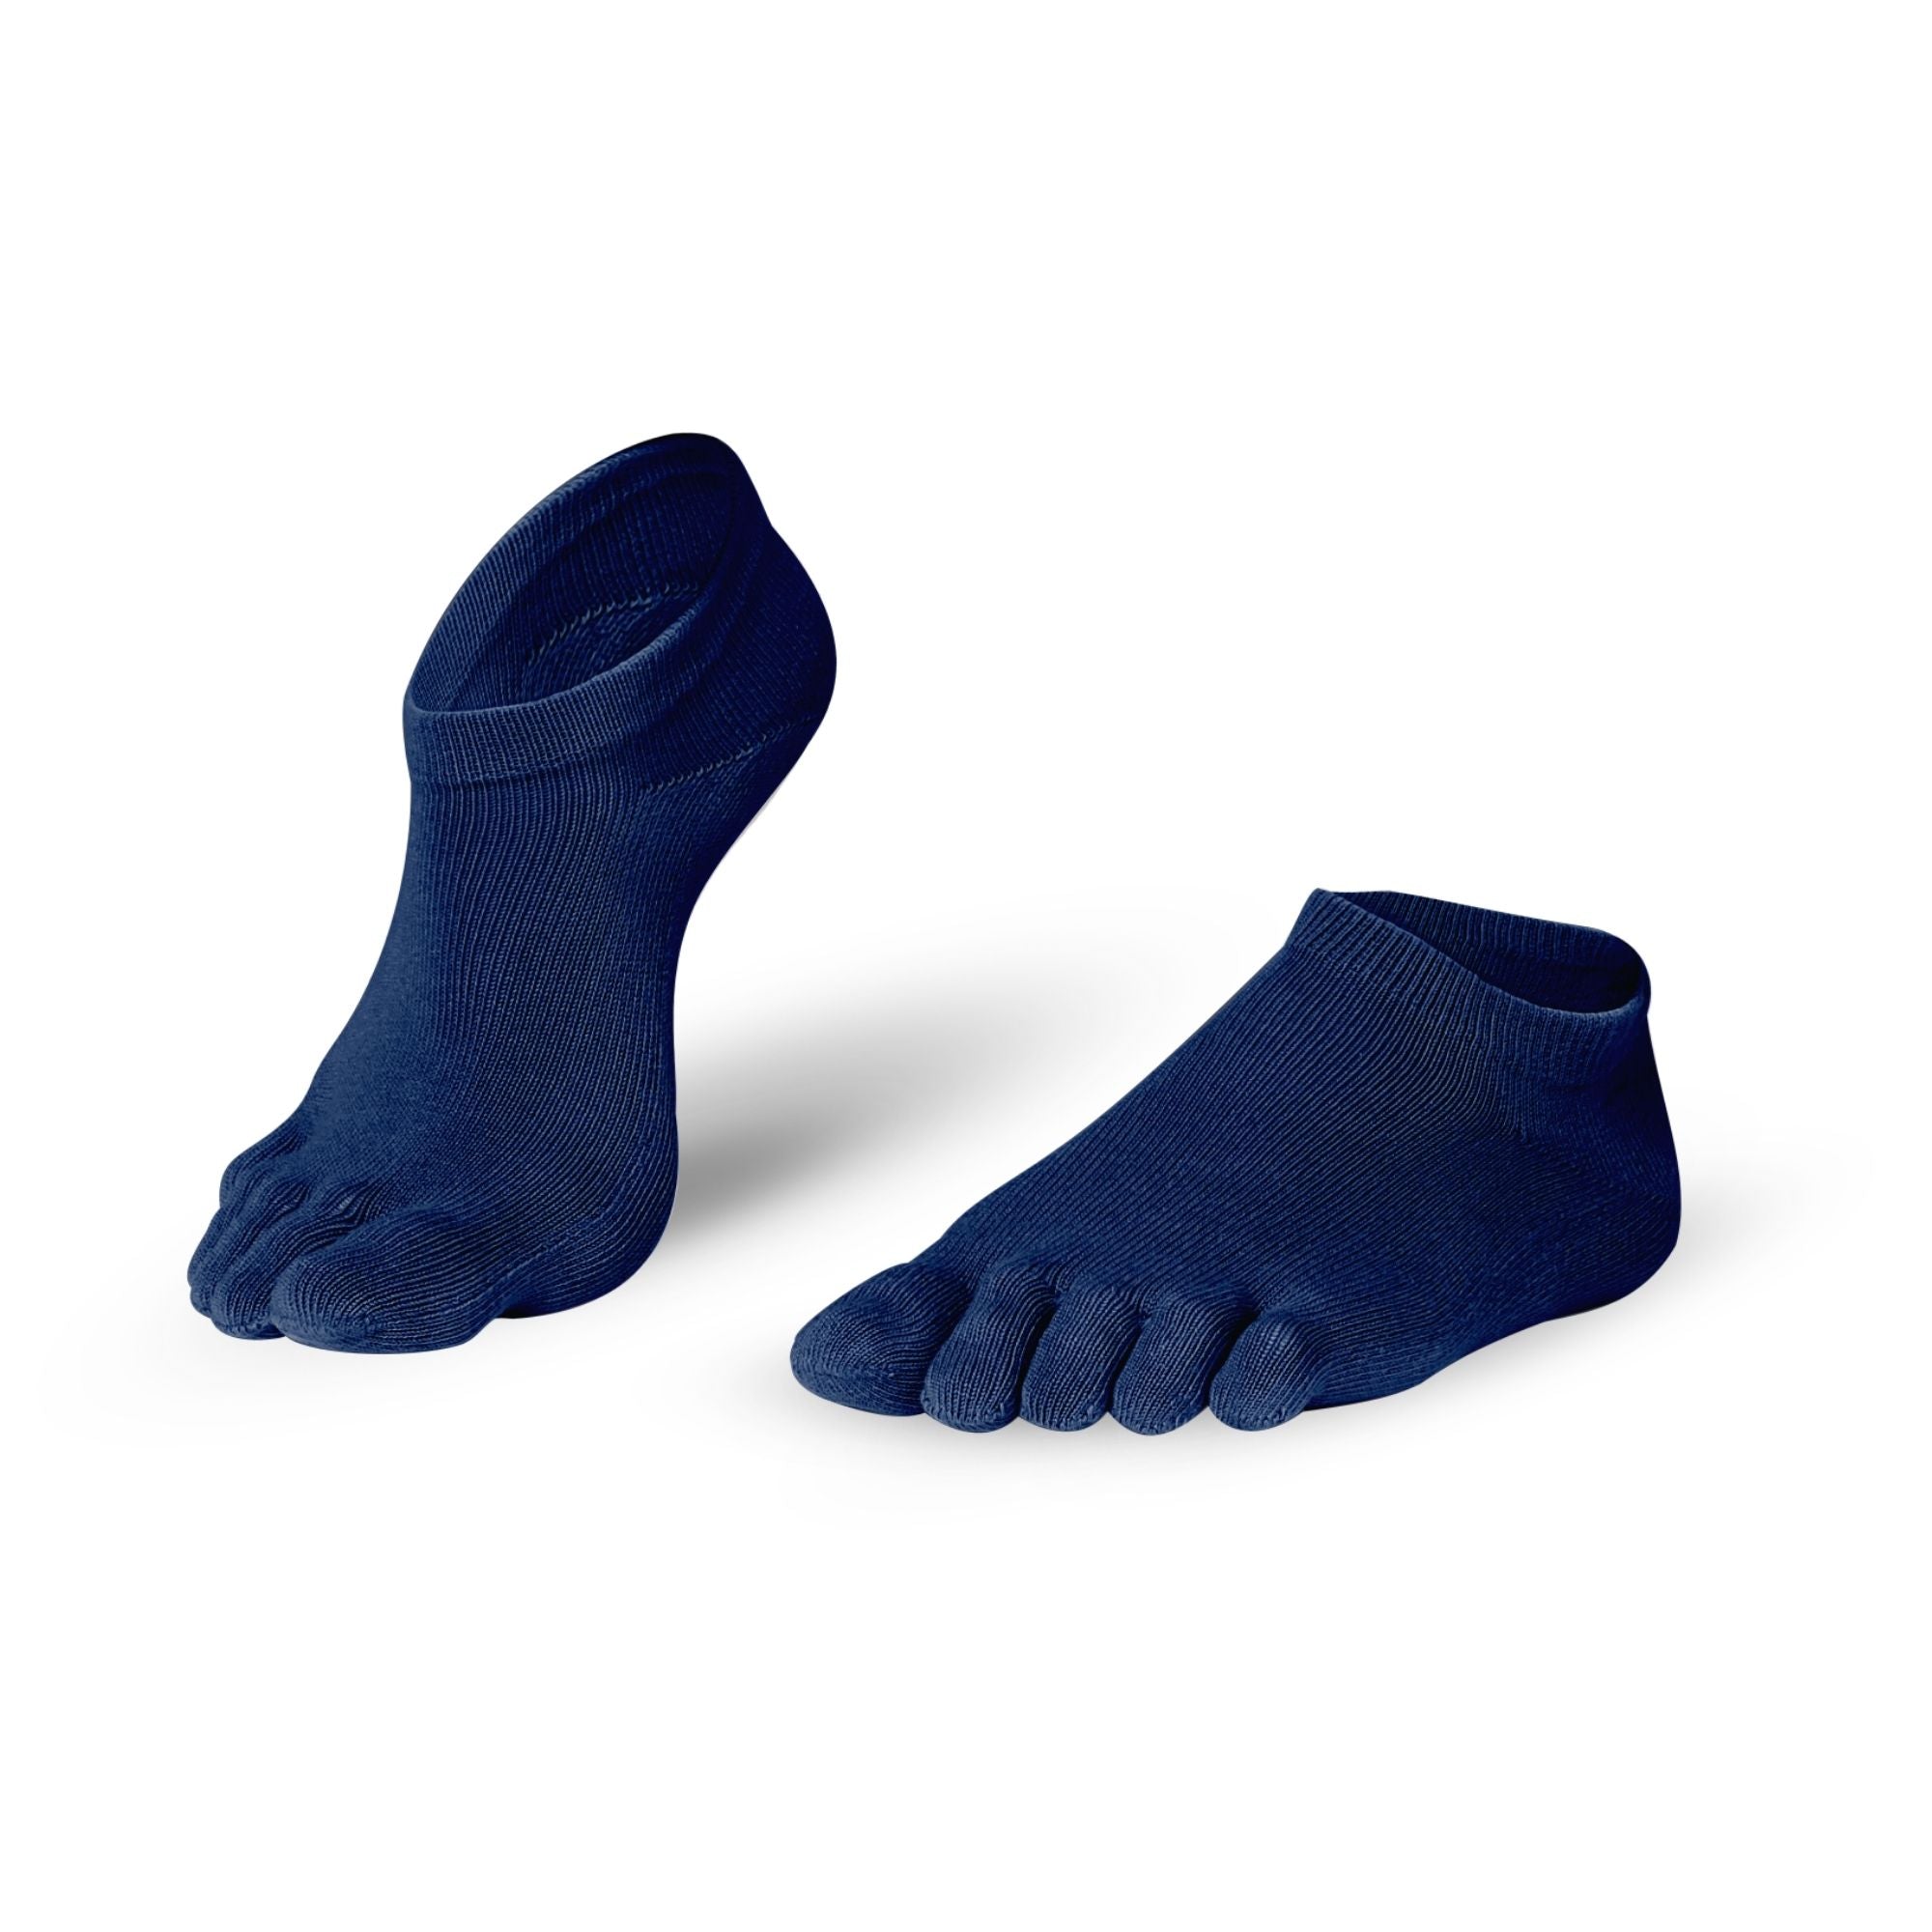 Knitido Sneaker in cotone Everyday Essentials calze con dita da indossare tutti i giorni, in molti colori.